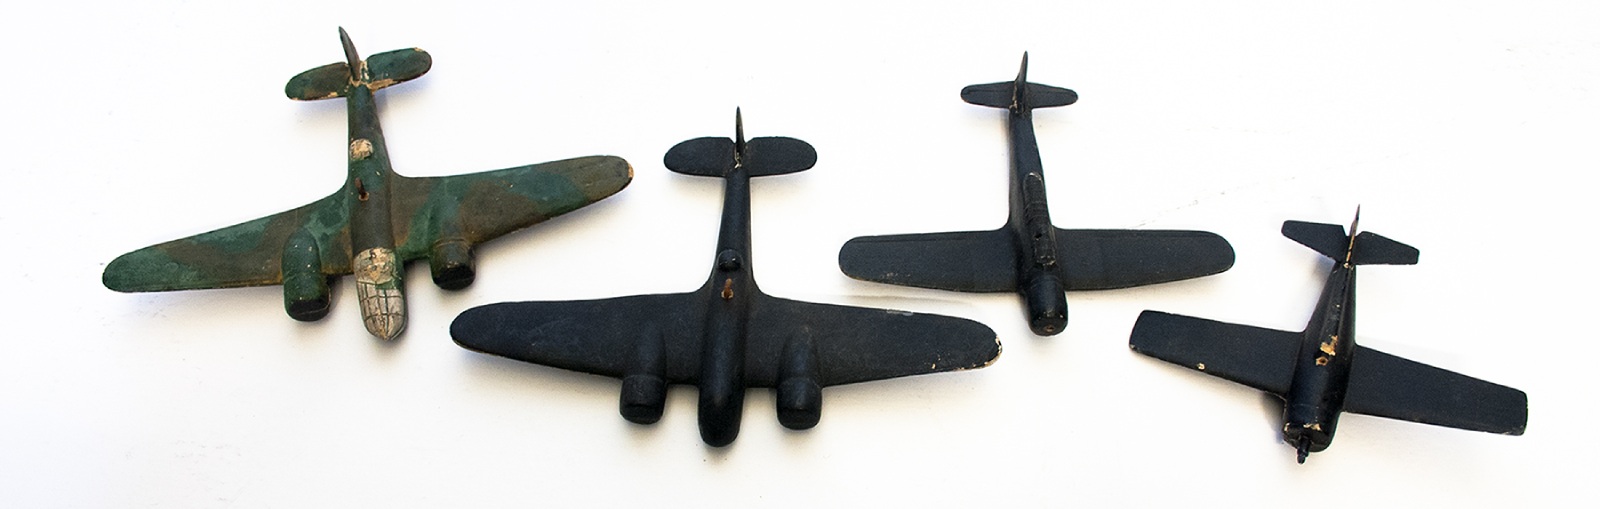 Four toy World war 2-era planes.